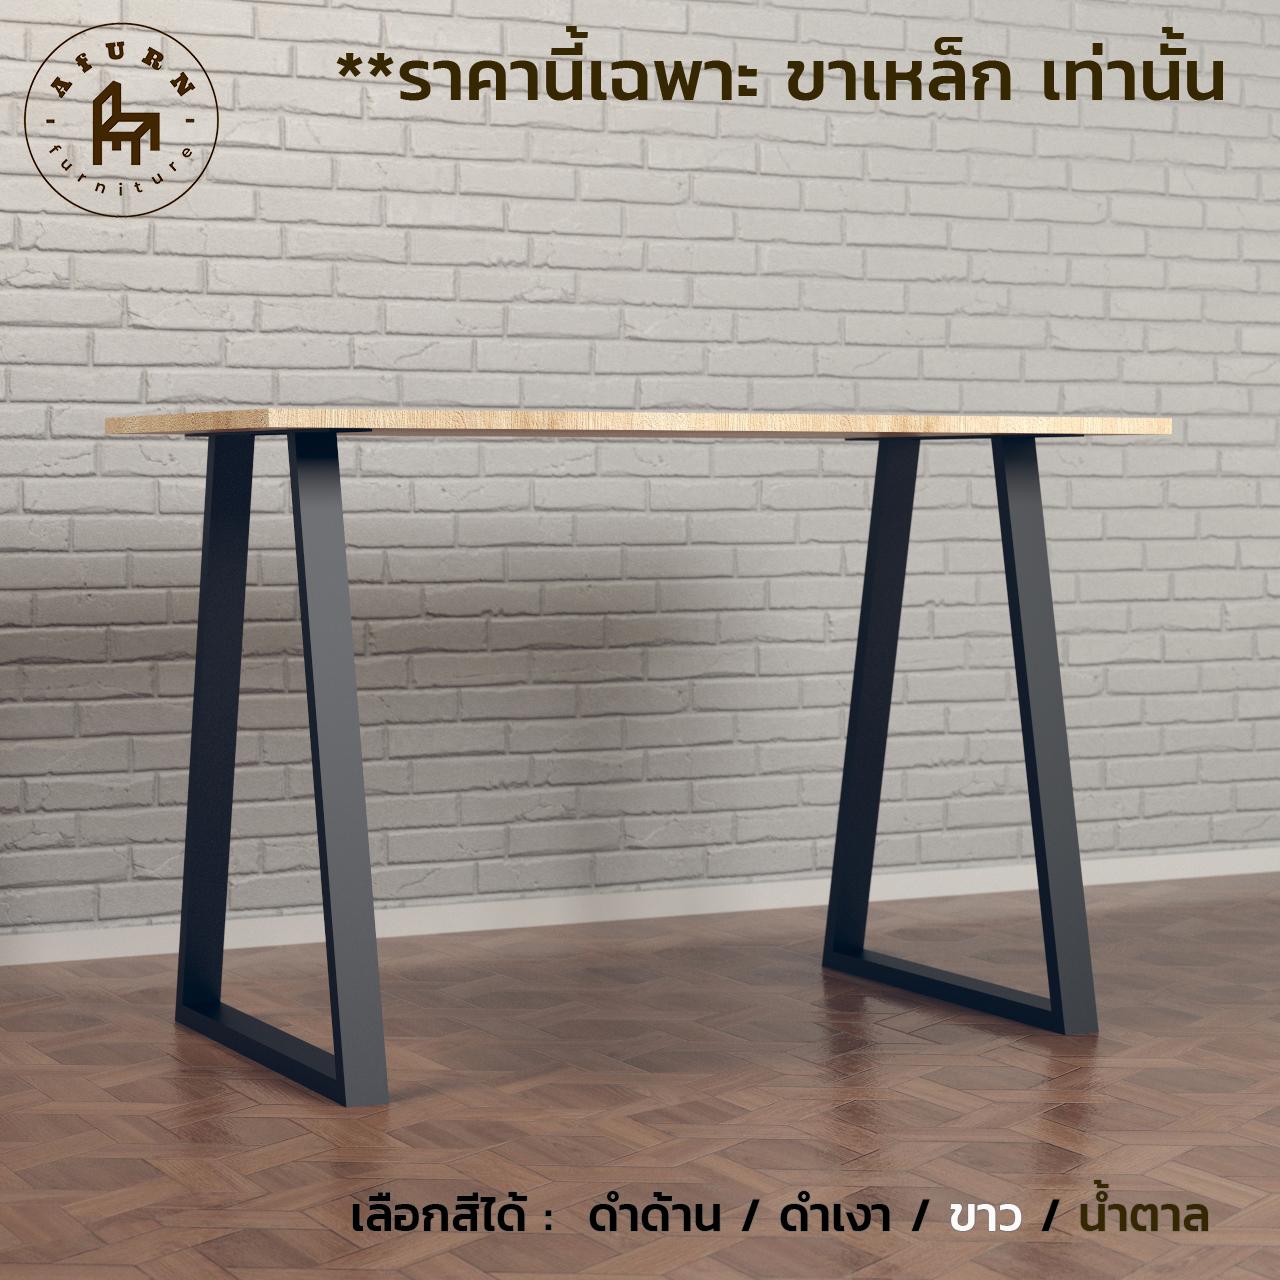 Afurn DIY รุ่น Tamar ขาโต๊ะเหล็ก 1 ชุด ความสูง 75 cm. สำหรับติดตั้งกับไม้ ทำโต๊ะคอม โต๊ะอ่านหนังสือ โต๊ะกินข้าว